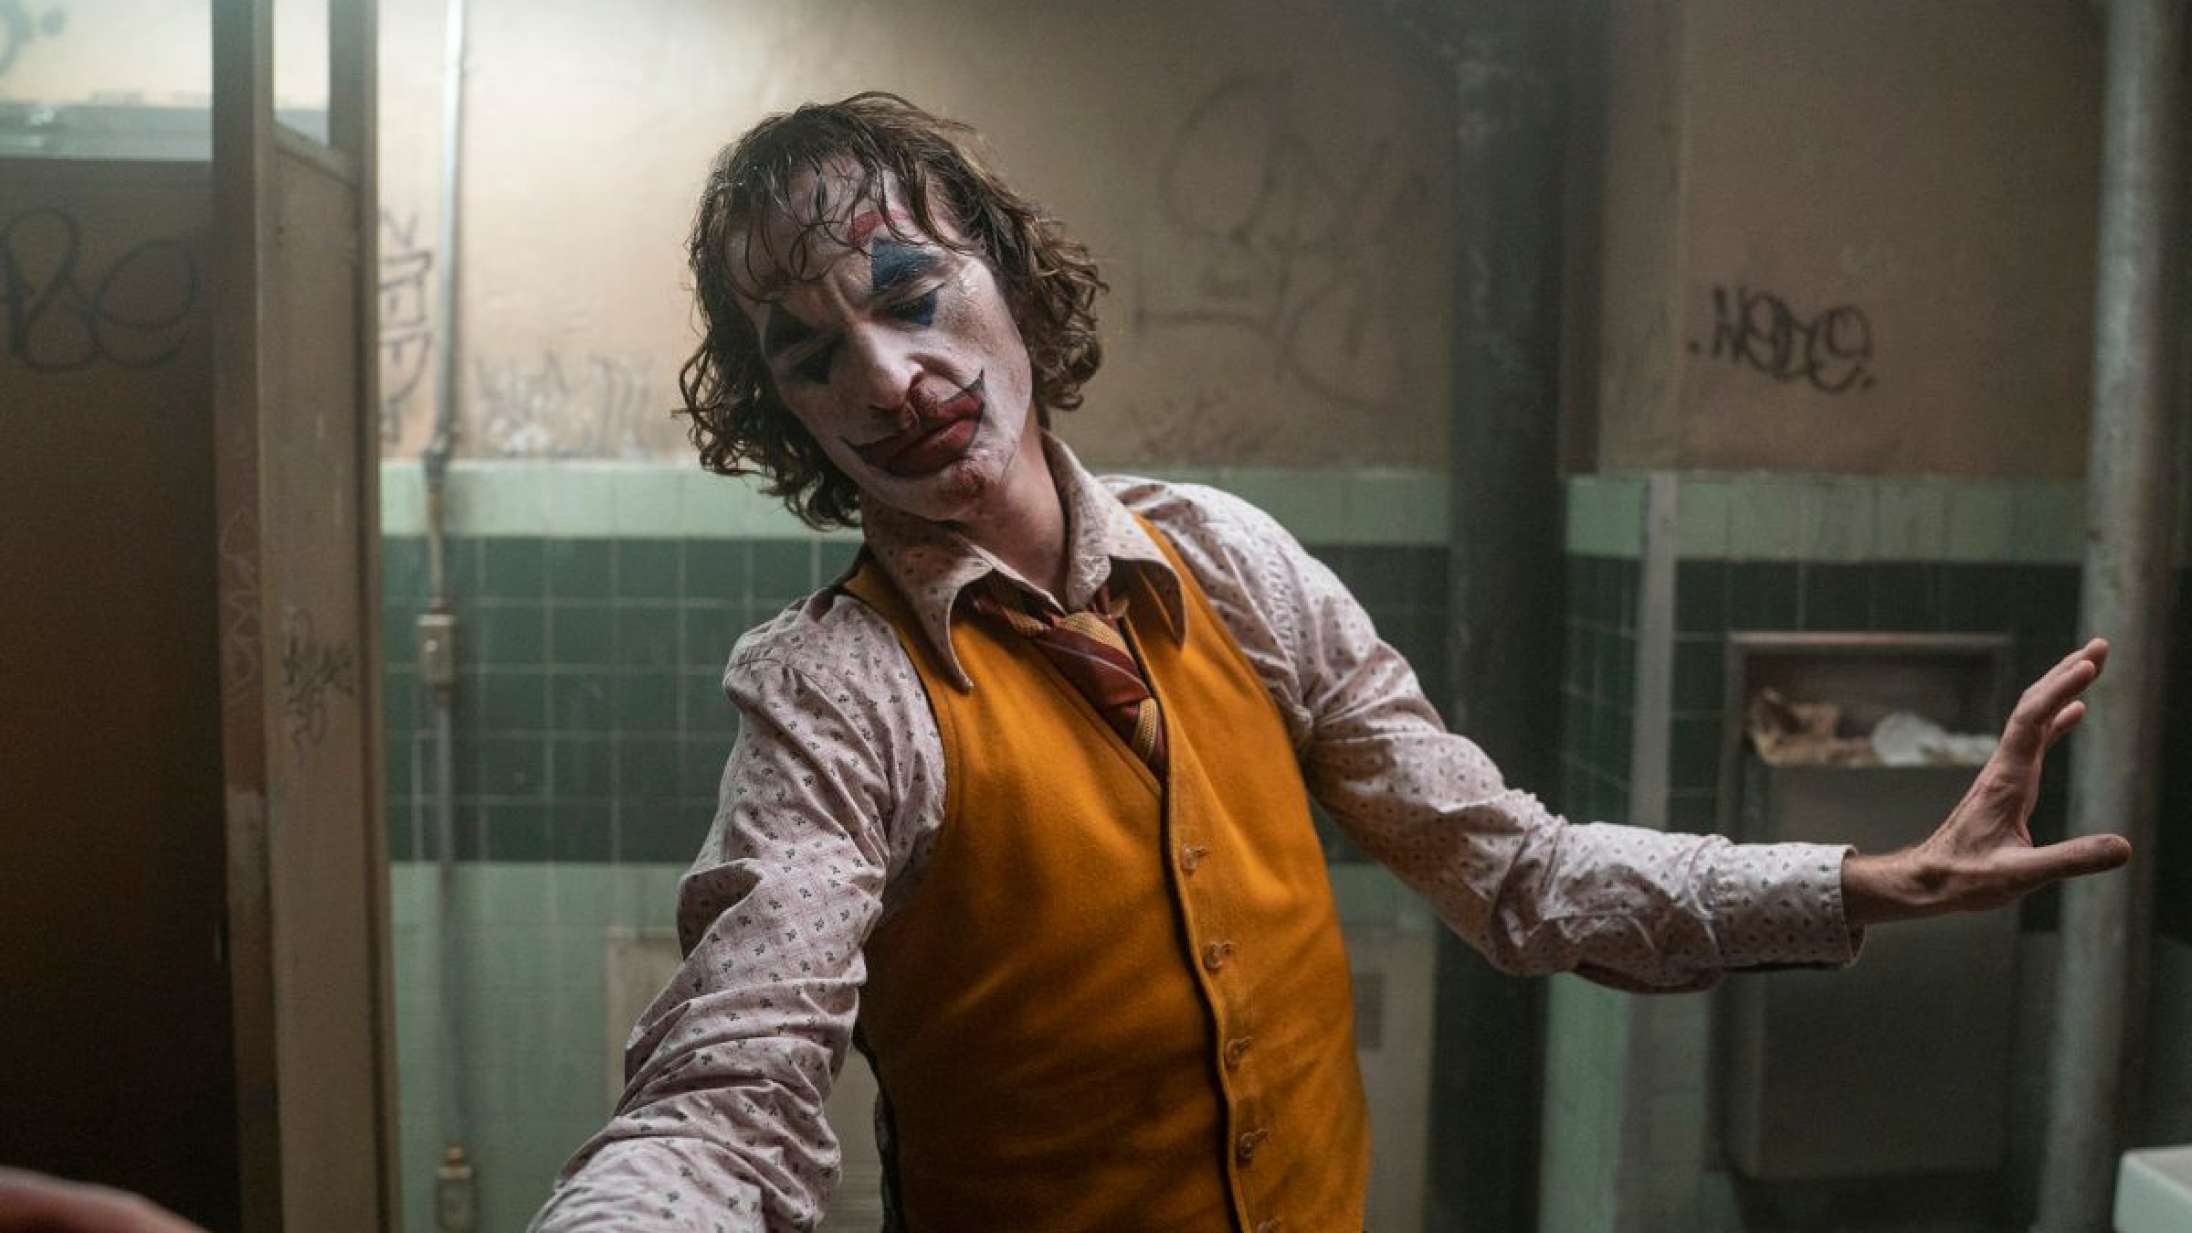 Pædofilidømt musiker tjener penge på ikonisk ‘Joker’-scene